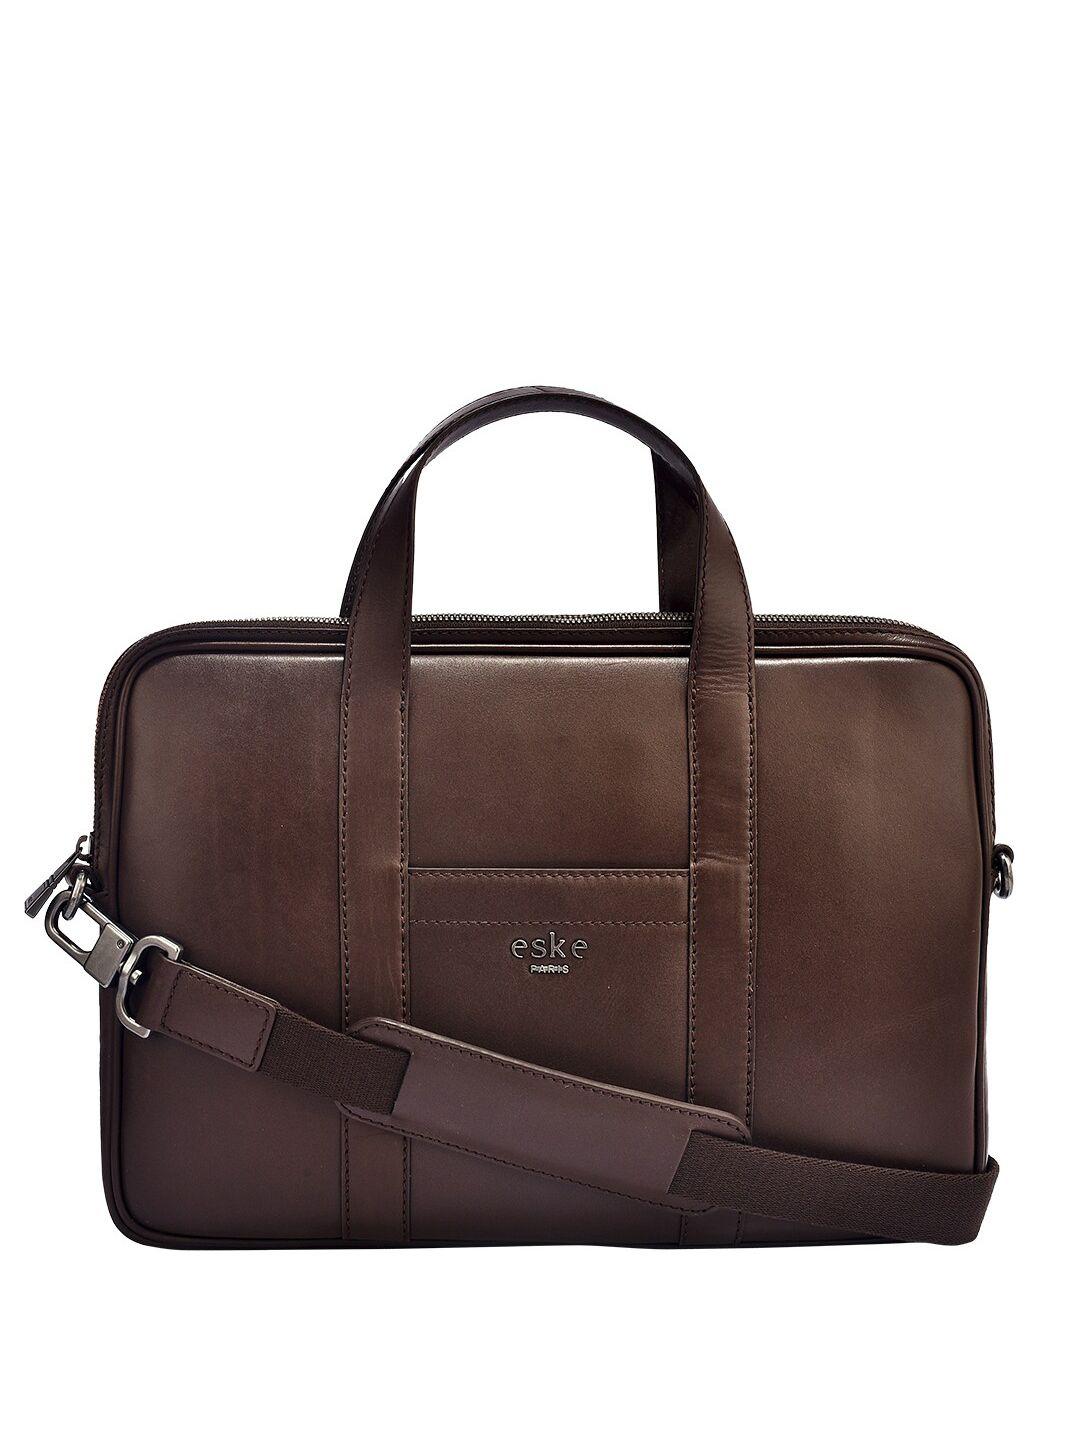 eske unisex leather laptop bag 38 cm